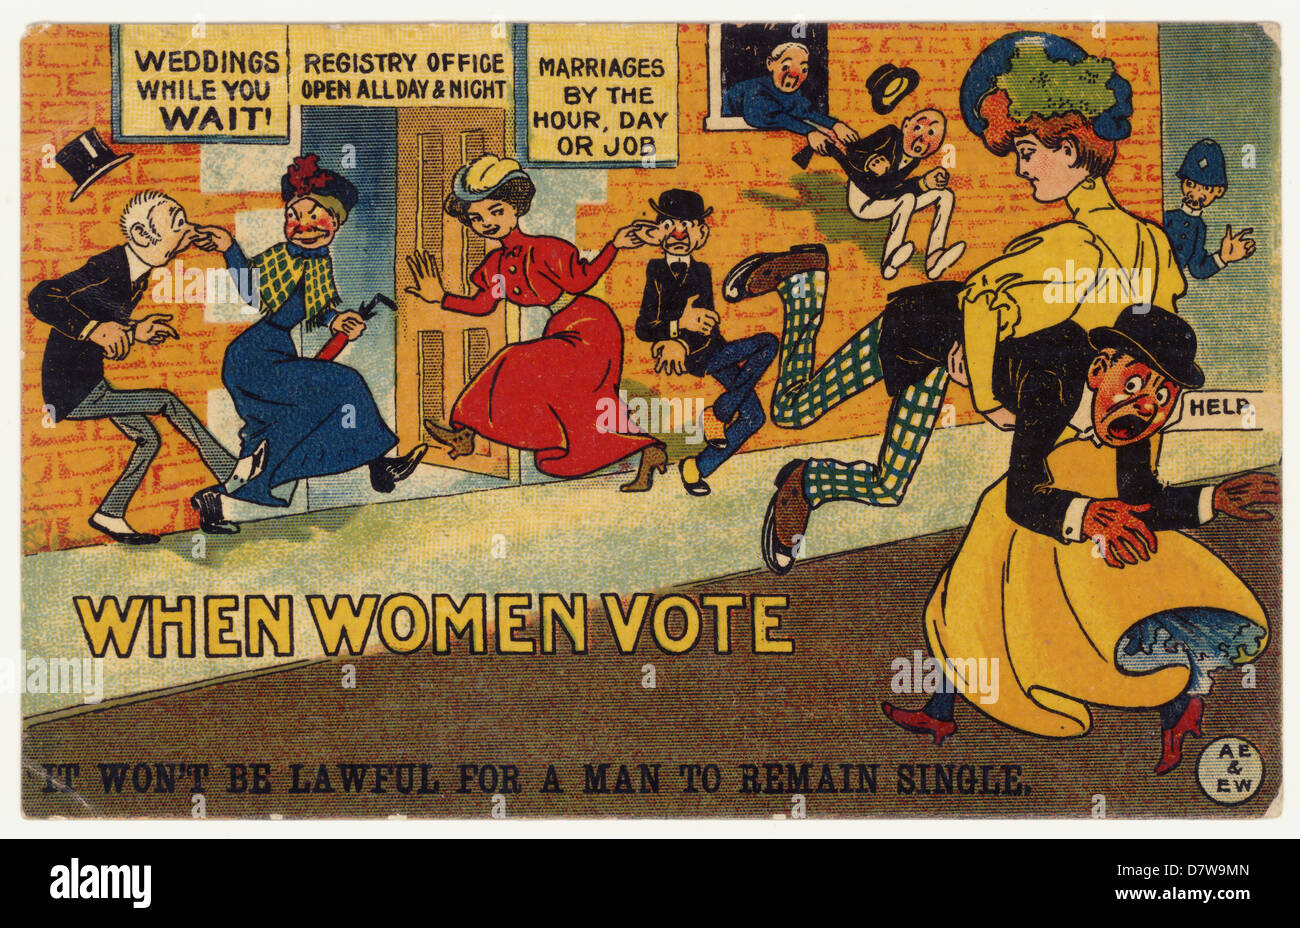 Carte postale de propagande satirique britannique alarmiste contre la suffragette en date du 1910 février s'opposant au suffrage des femmes « lorsque les femmes votent, il ne sera pas légitime qu'un homme reste célibataire », droit de voter contre le féminisme , Royaume-Uni en date du 1910 février Banque D'Images